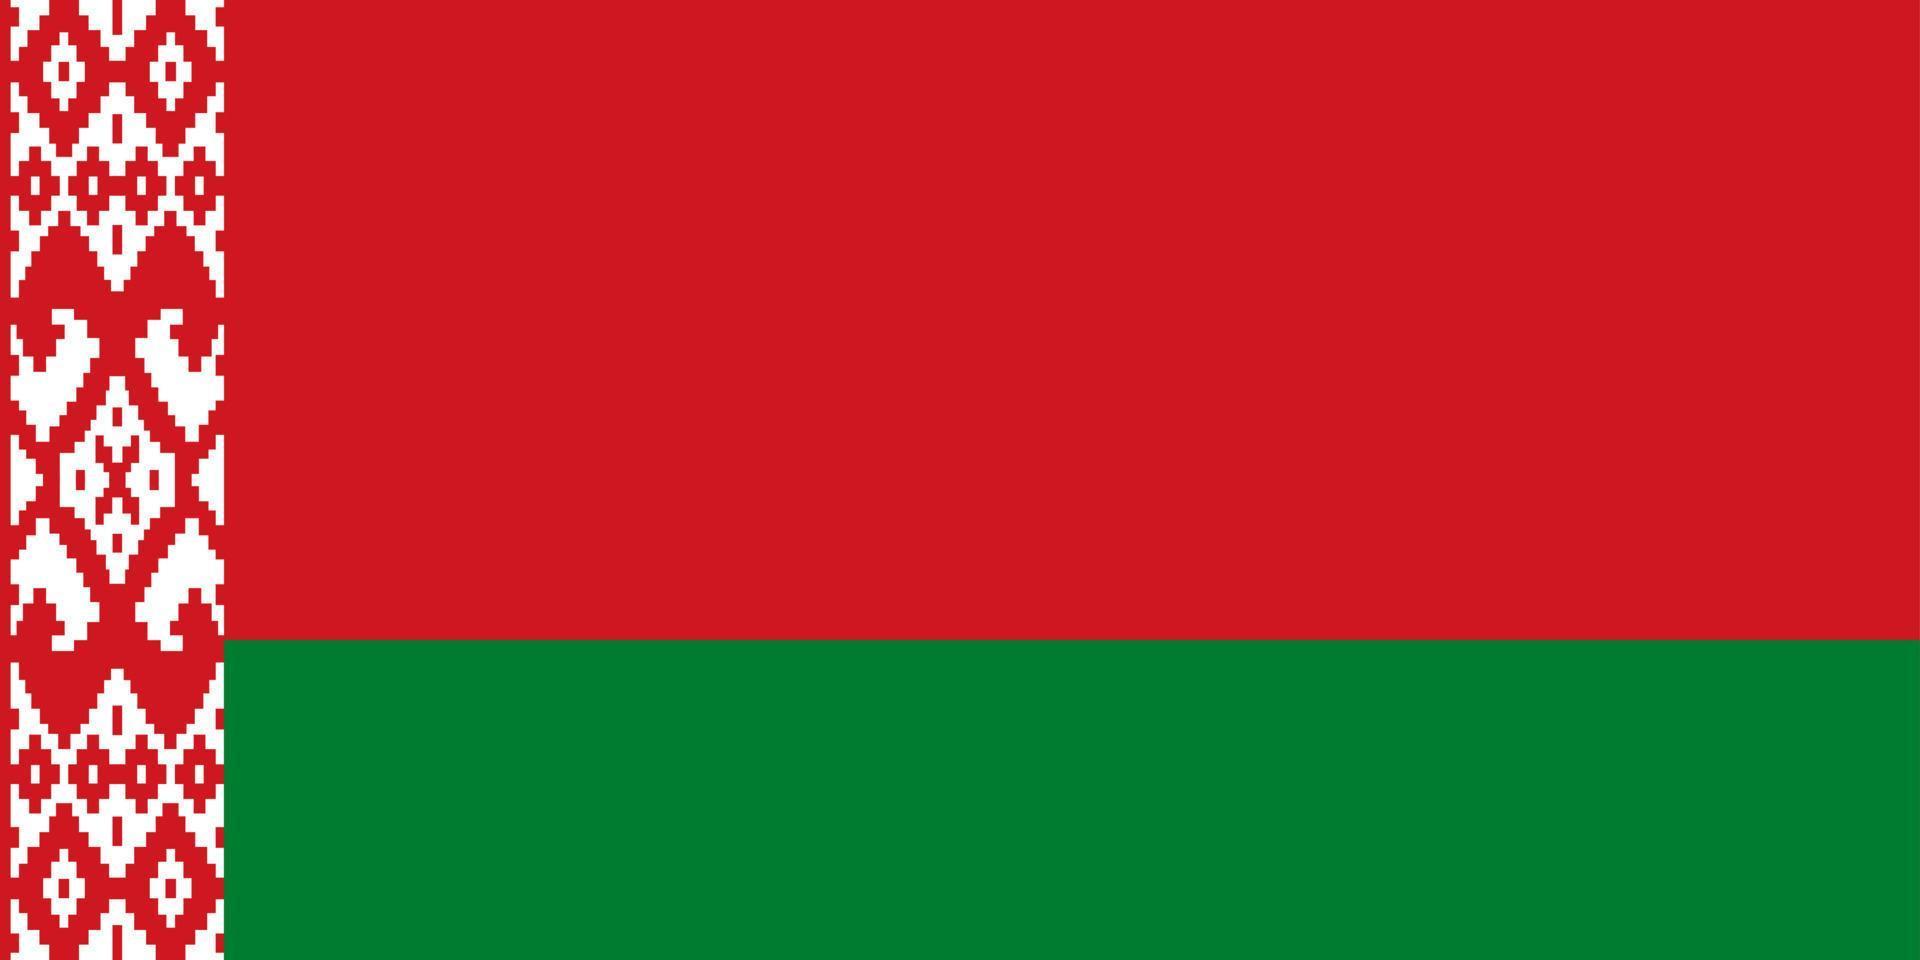 bandeira da república da bielorrússia. vetor. dimensões exatas, proporções e cores dos elementos. original e simples vetor isolado da bandeira da bielorrússia em cores oficiais e proporções corretas.